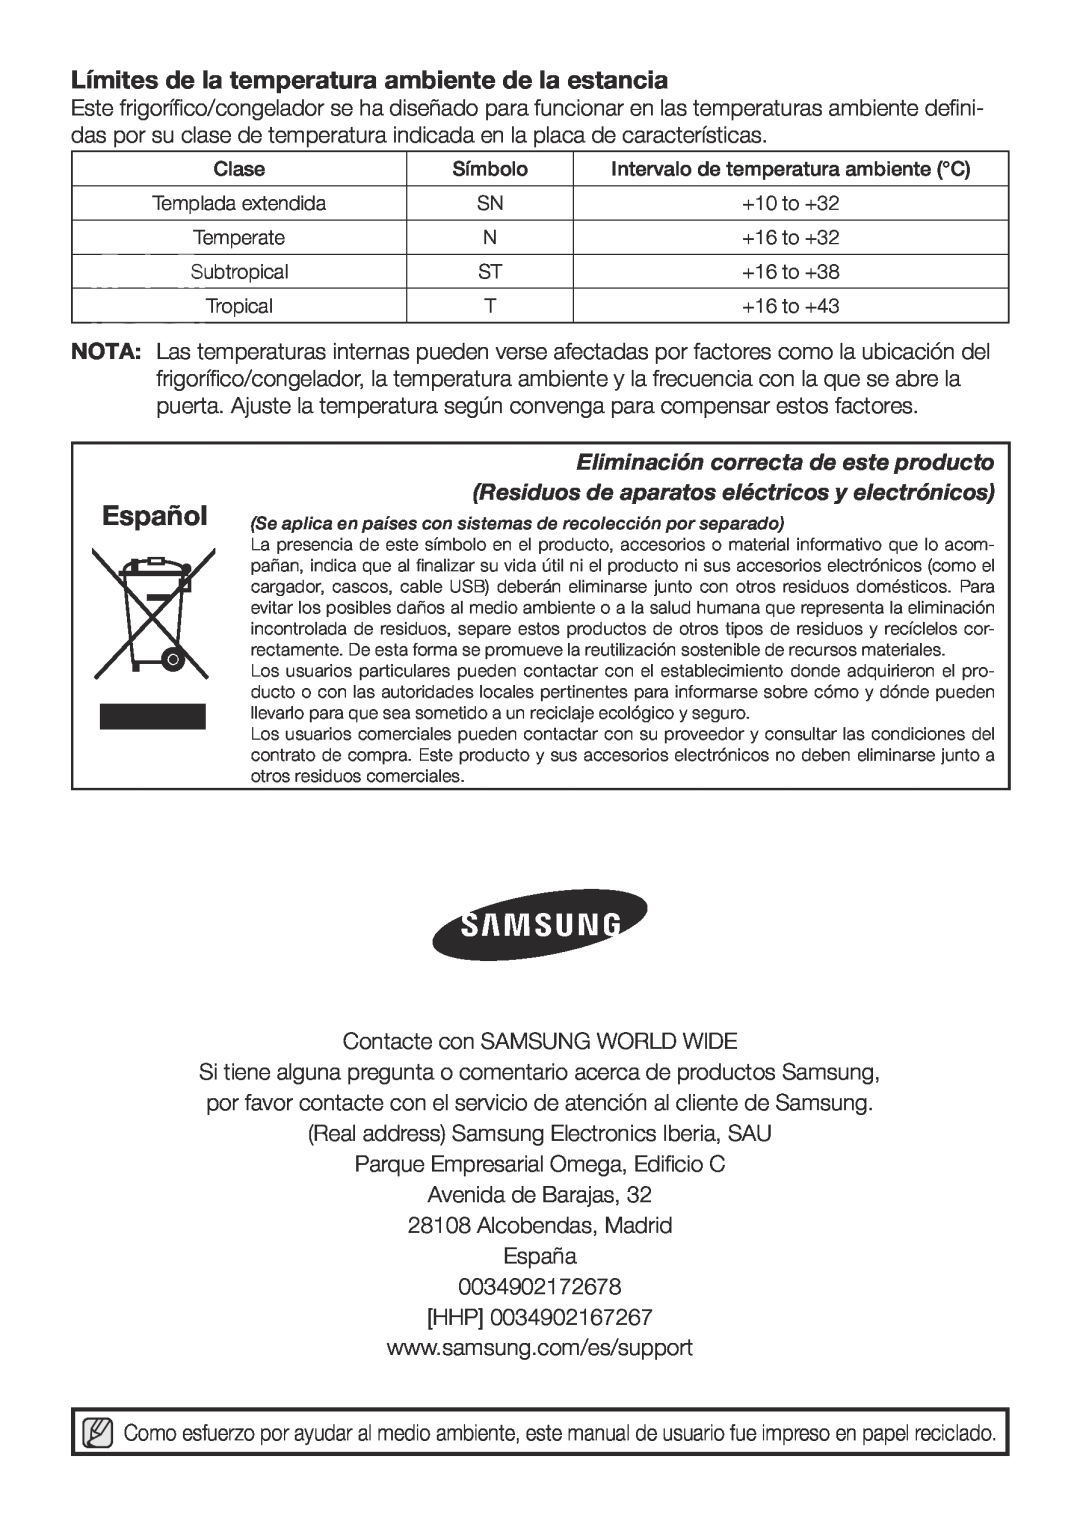 Samsung RL62VCSH1/XES Español, Límites de la temperatura ambiente de la estancia, Eliminación correcta de este producto 